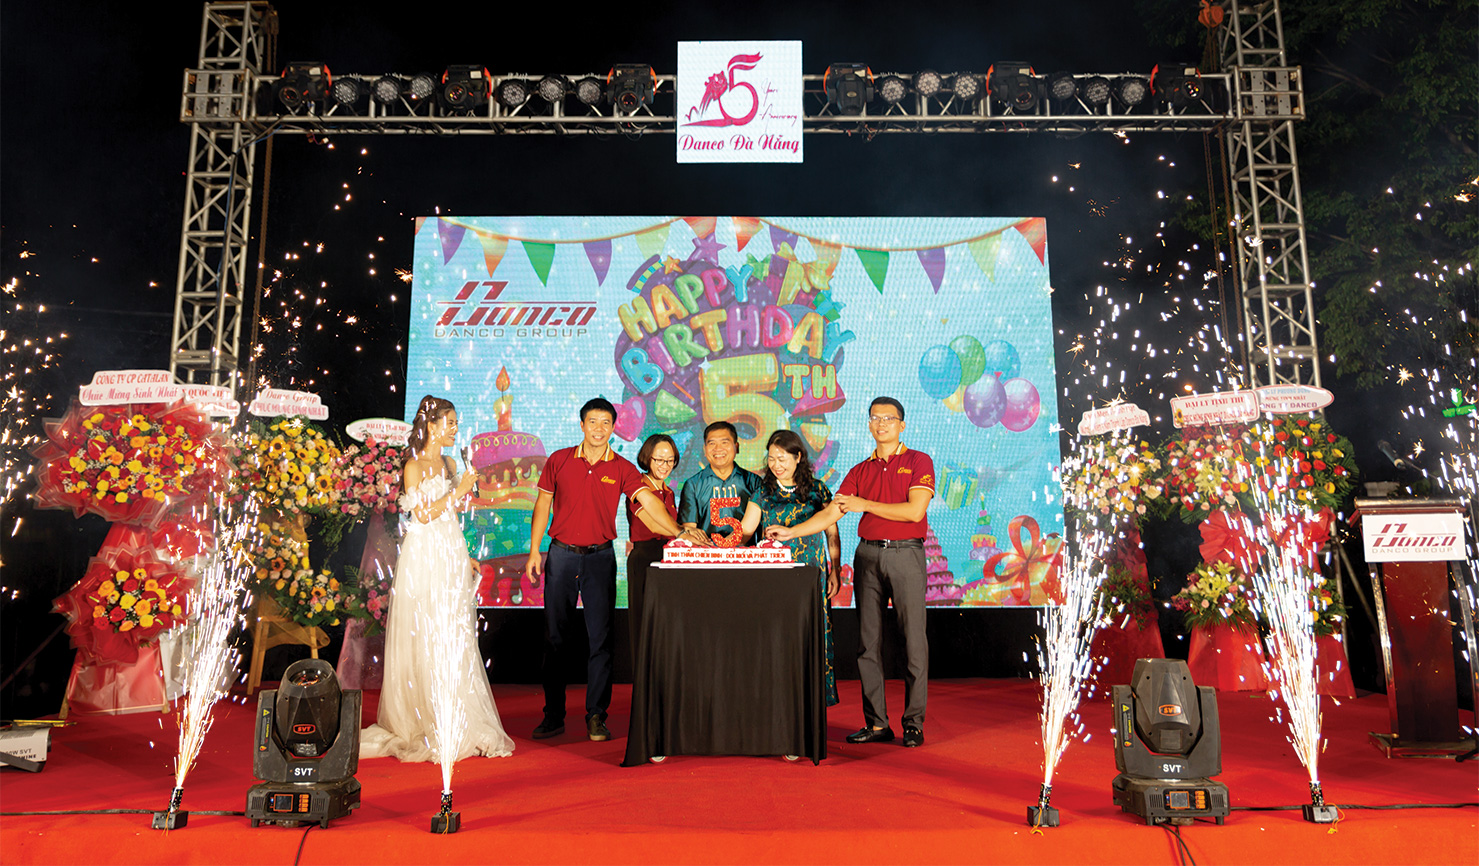 Ban lãnh đạo Danco Group và Danco Đà Nẵng cùng nhau cắt bánh và chúc mừng sinh nhật Danco Đà Nẵng tròn 5 tuổi 